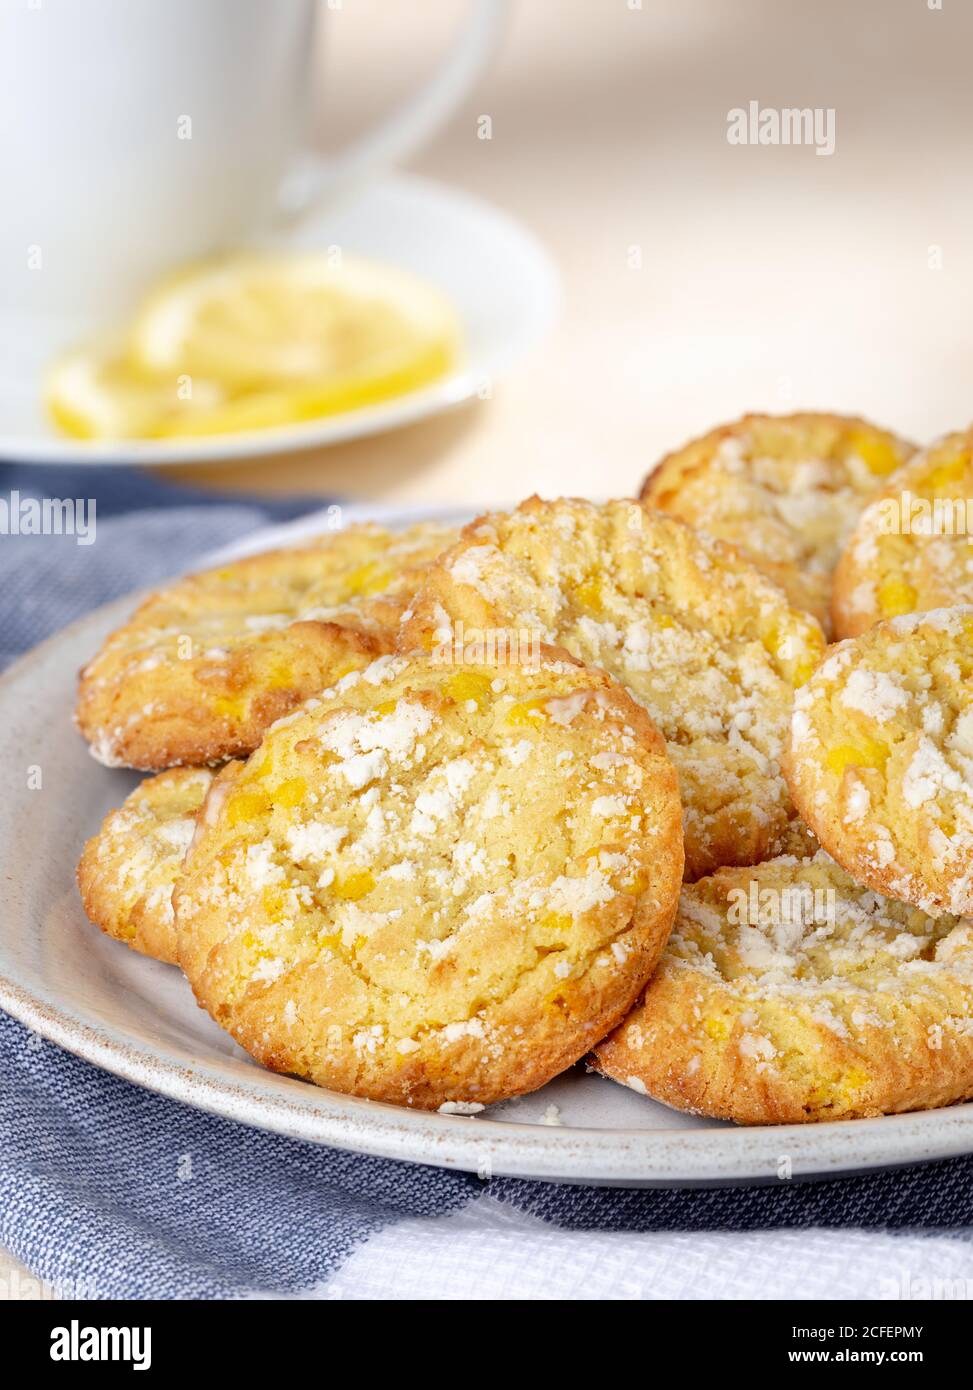 Zitronencrinkle Kekse auf einem Teller mit Tasse und in Scheiben geschnitten Zitrone im Hintergrund Stockfoto